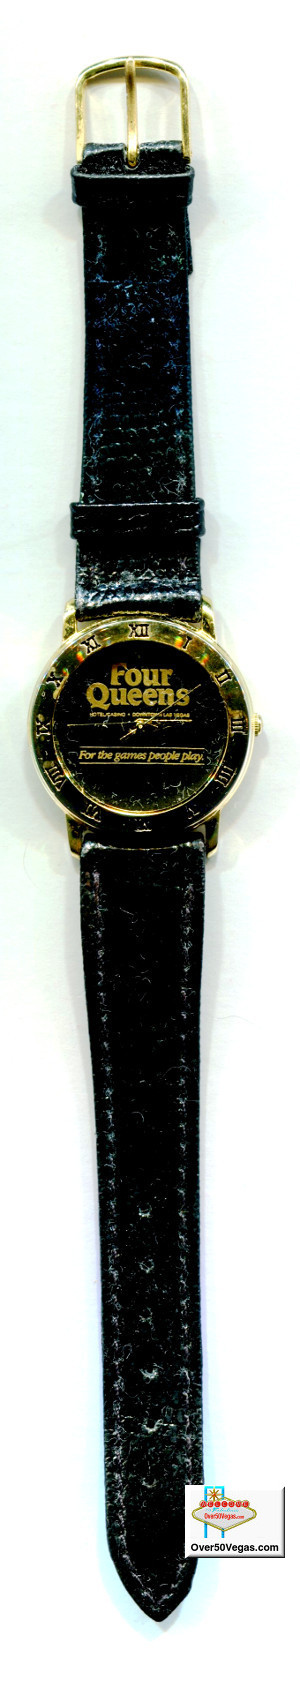 Four Queens wristwatch.